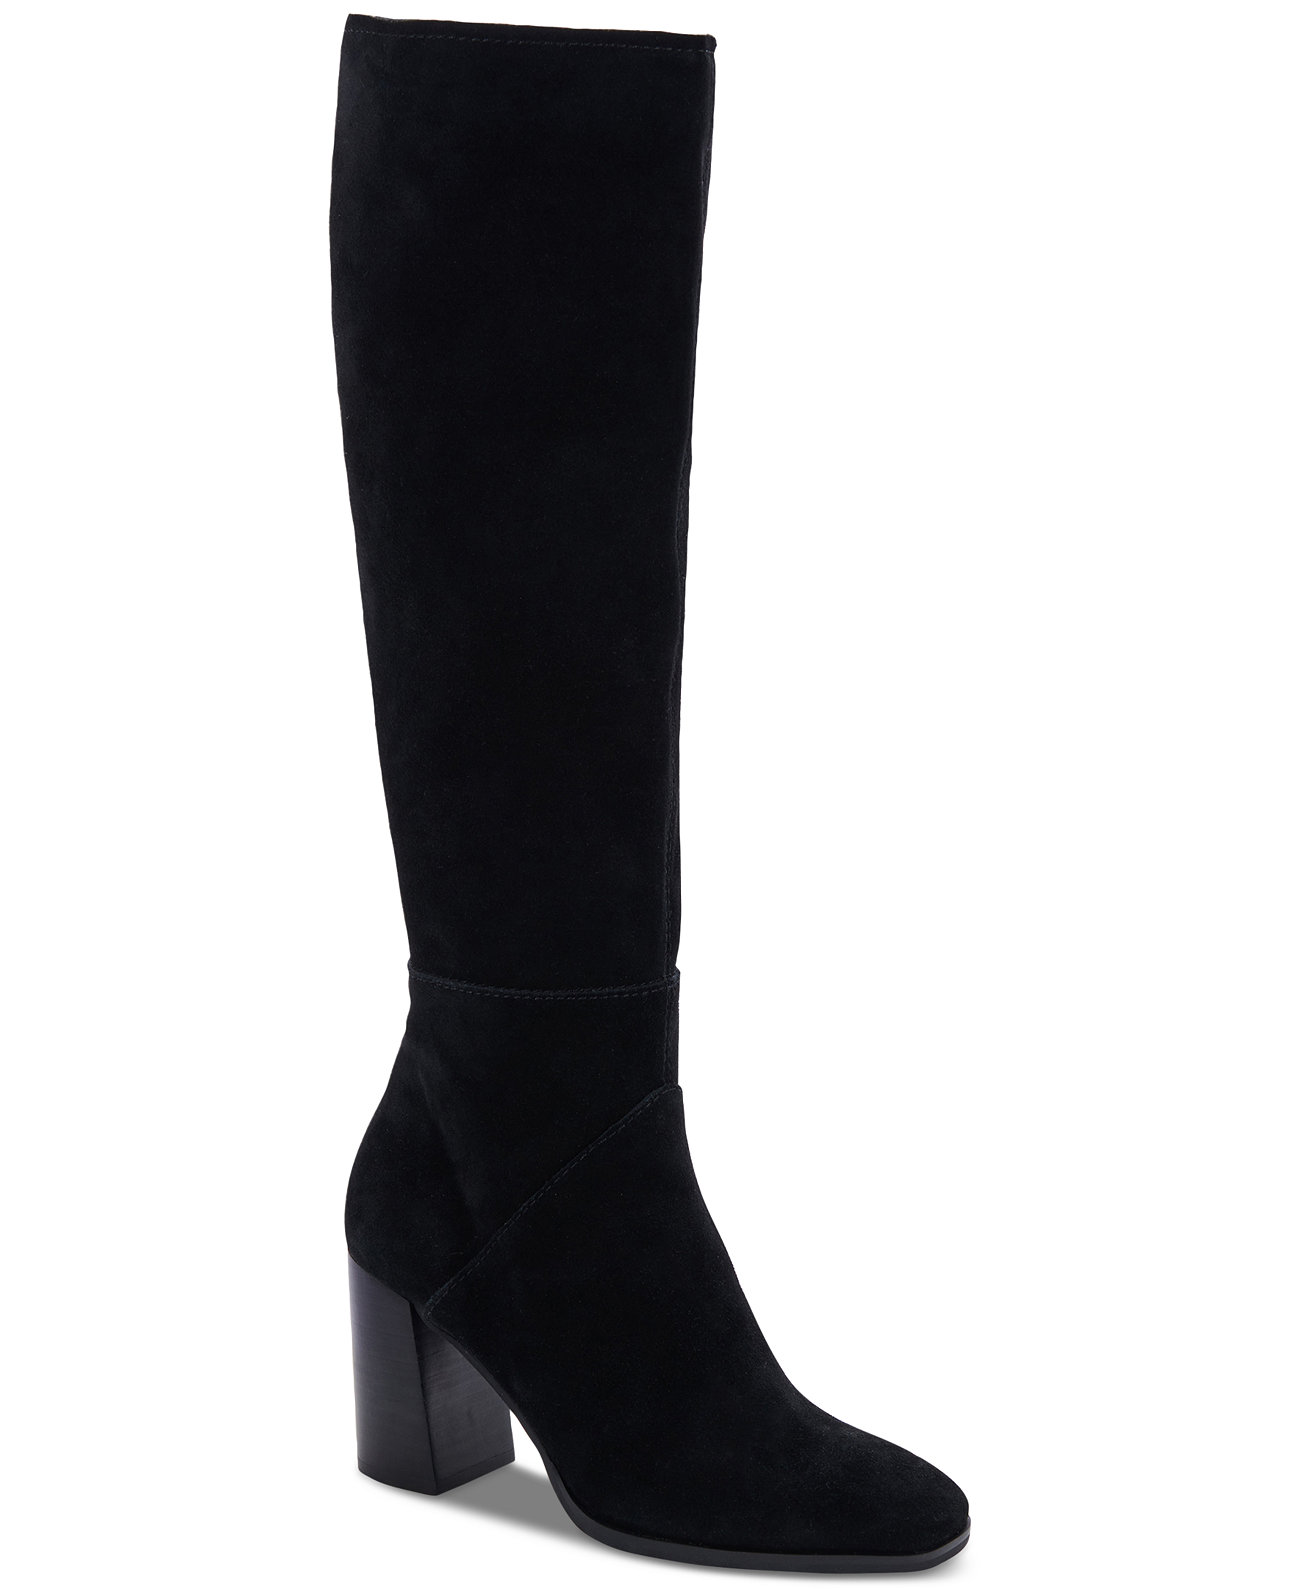 Женские классические ботинки Fynn на блочном каблуке Dolce Vita